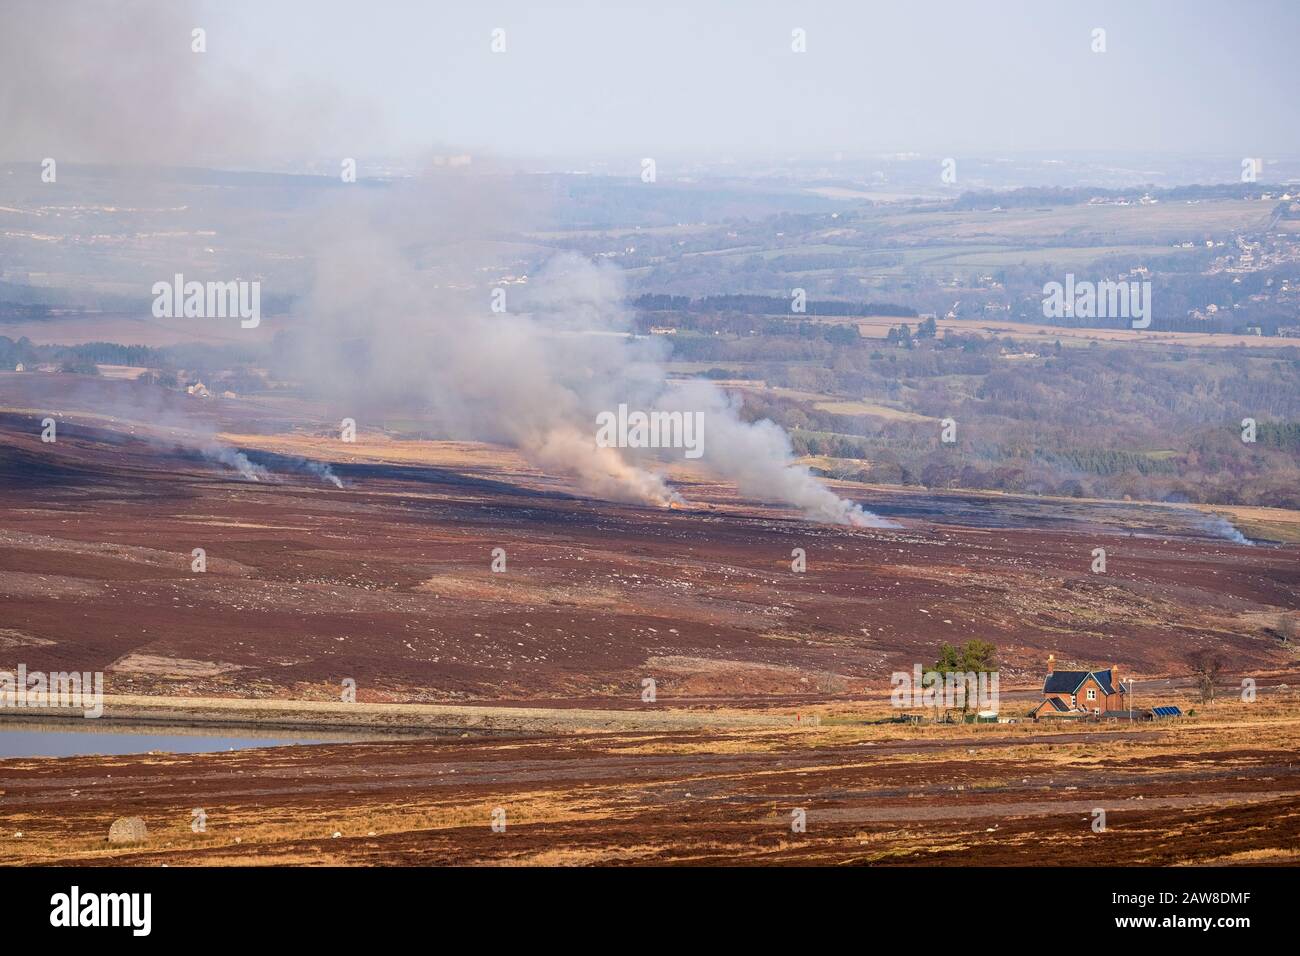 Luftverschmutzung durch Landmanagement - Rauch und brennende Heidekraut im Moorgebiet County Durham. Feuer, das zur Verwaltung von Grockenmooren verwendet wird. Stockfoto